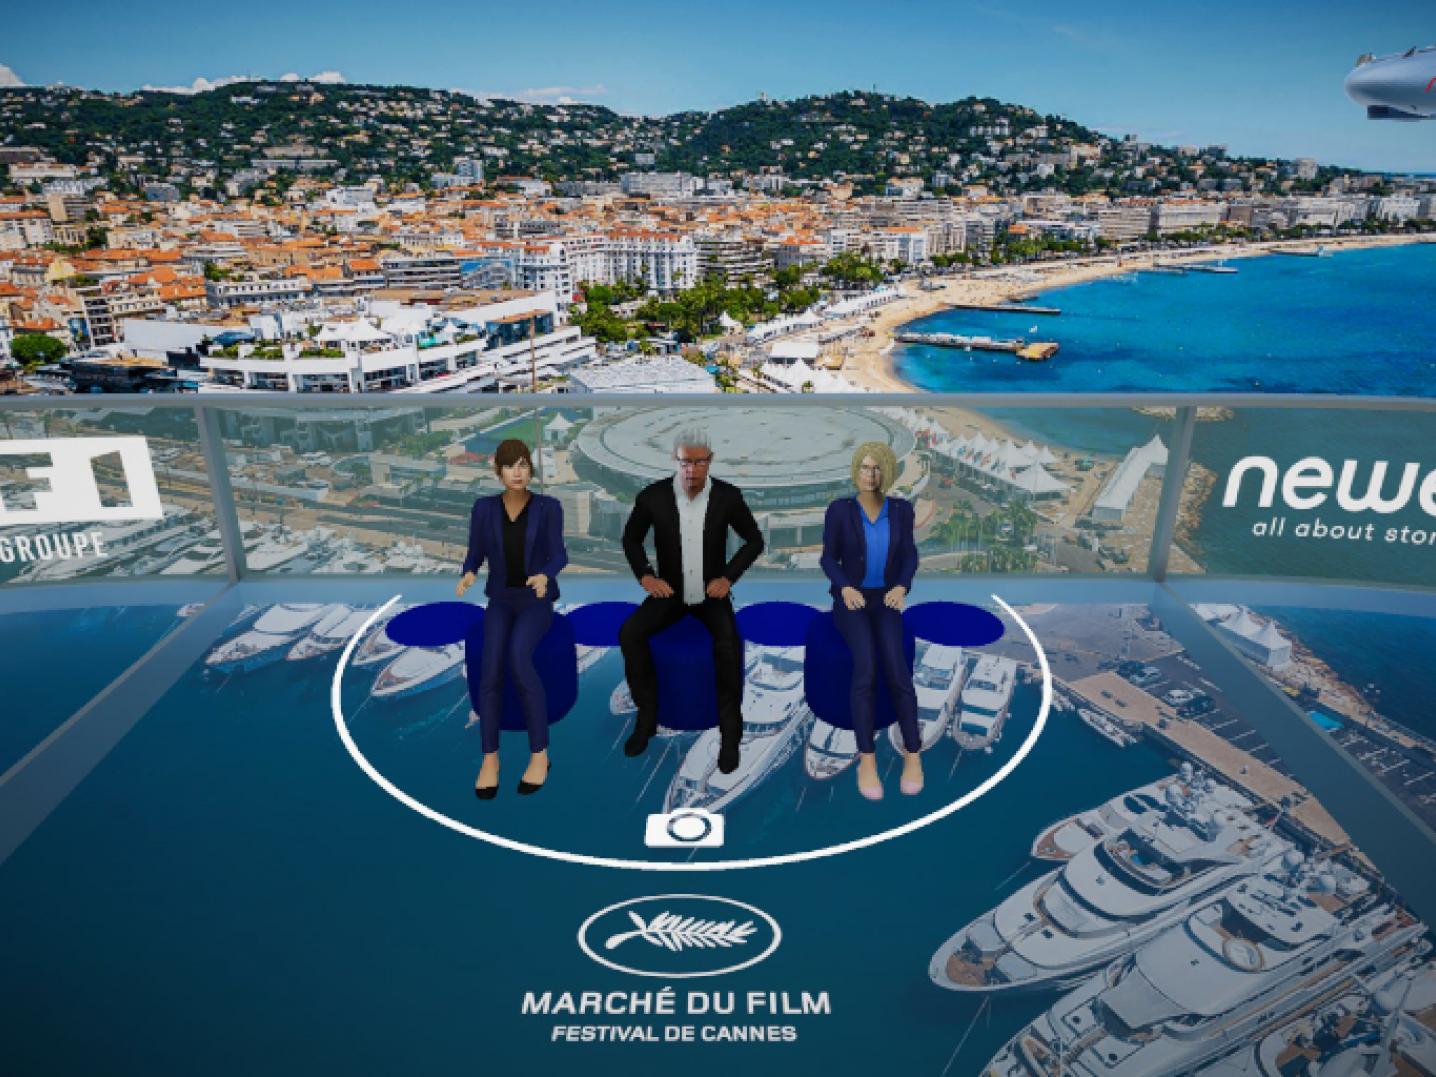 Screenshot uit het virtuele platform Newen Meta Sky,met daarop drie virtuele mensen en als achtergrond de Franse stad Cannes